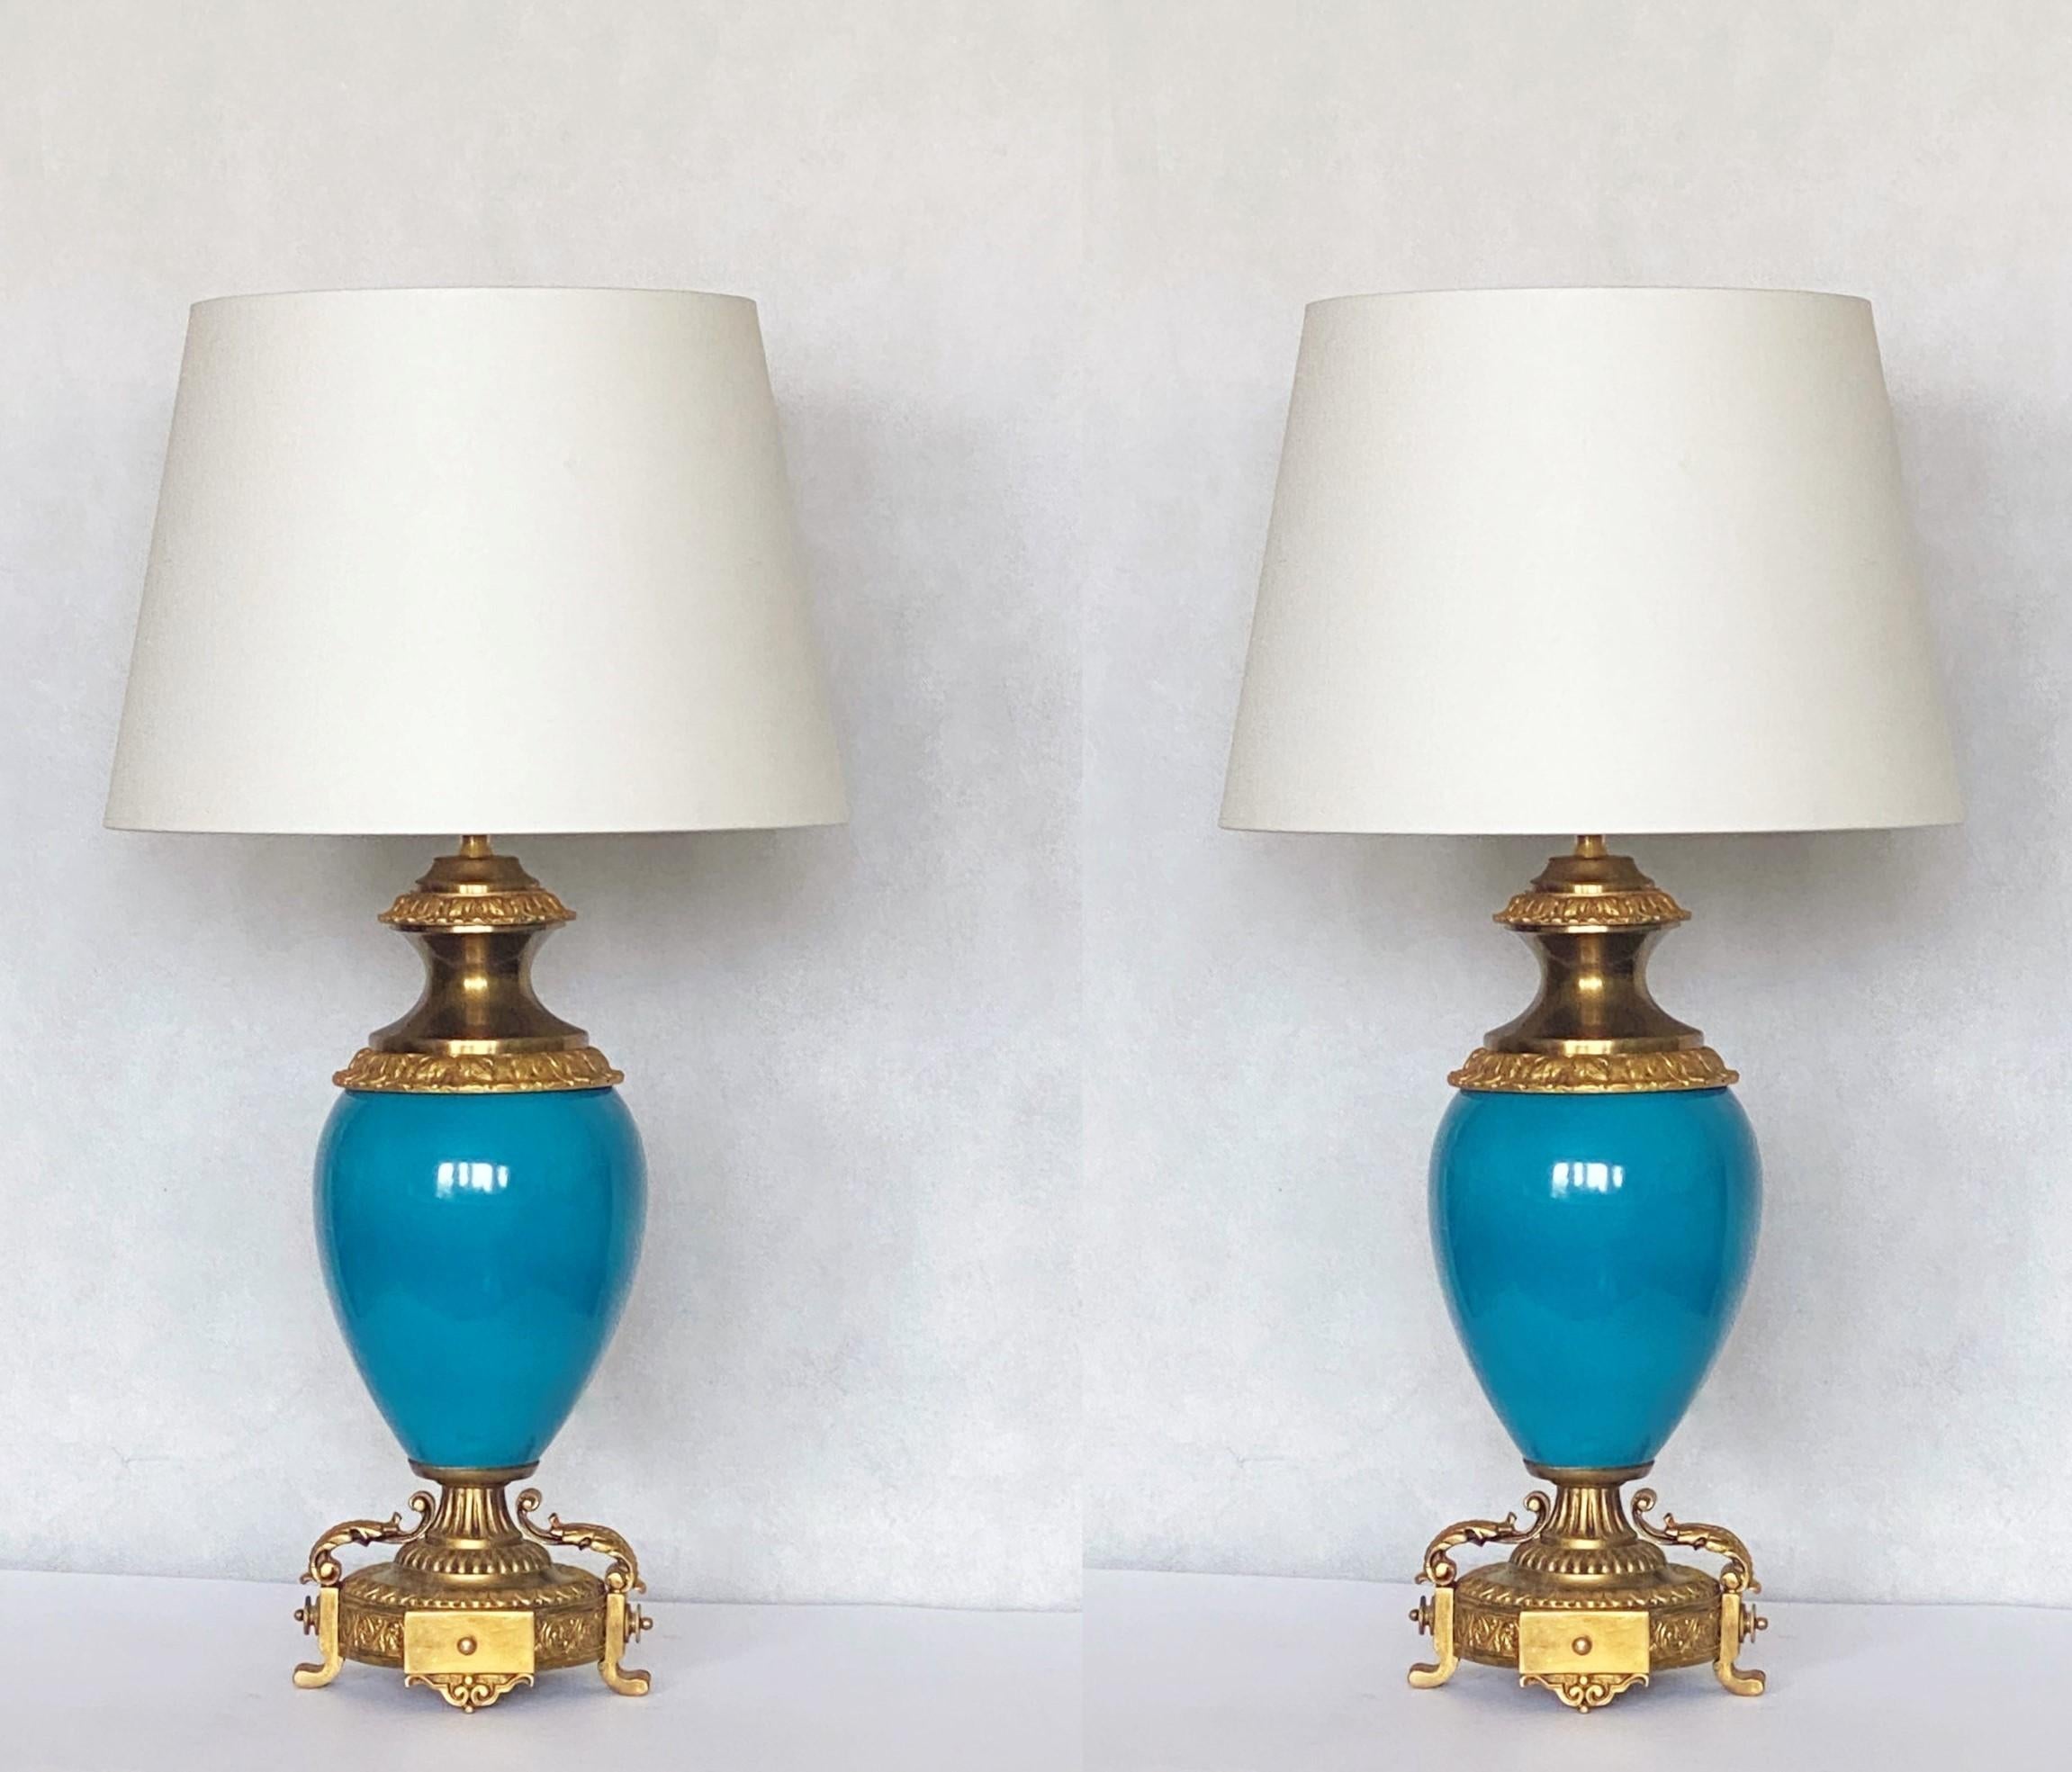 Paire de lampes de table en porcelaine bleue émaillée, montées sur bronze doré, France, début du 20e siècle. Vase en porcelaine reposant sur une base en bronze magnifiquement élaborée. Les deux vases en porcelaine sont en très bon état, couleur très